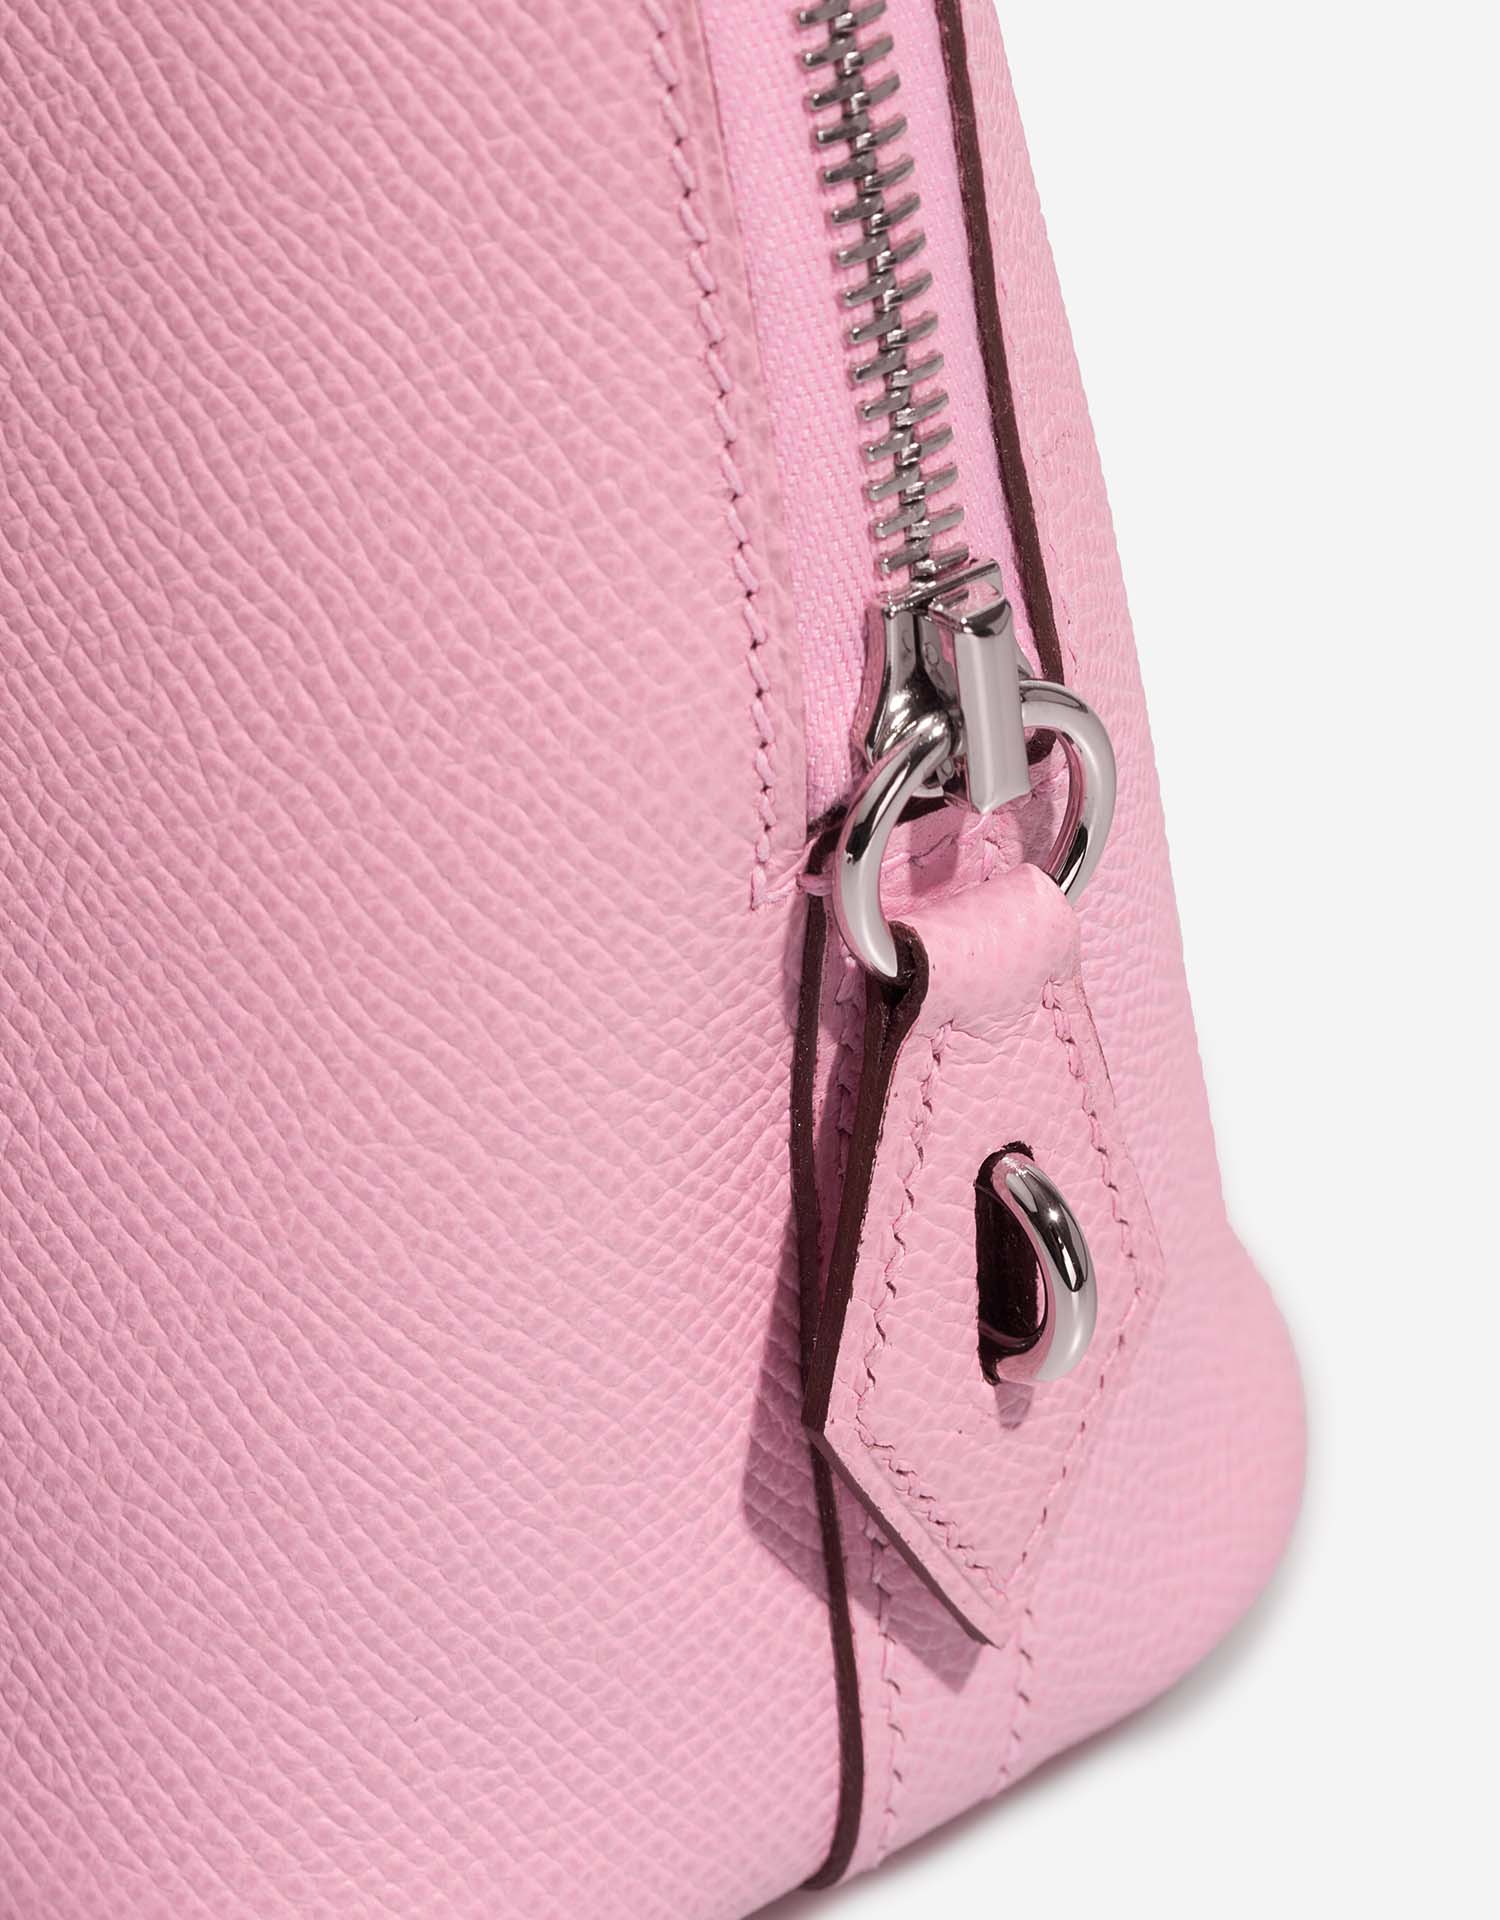 Hermès Bolide 25 MauveSylvestre Closing System | Vendez votre sac de créateur sur Saclab.com